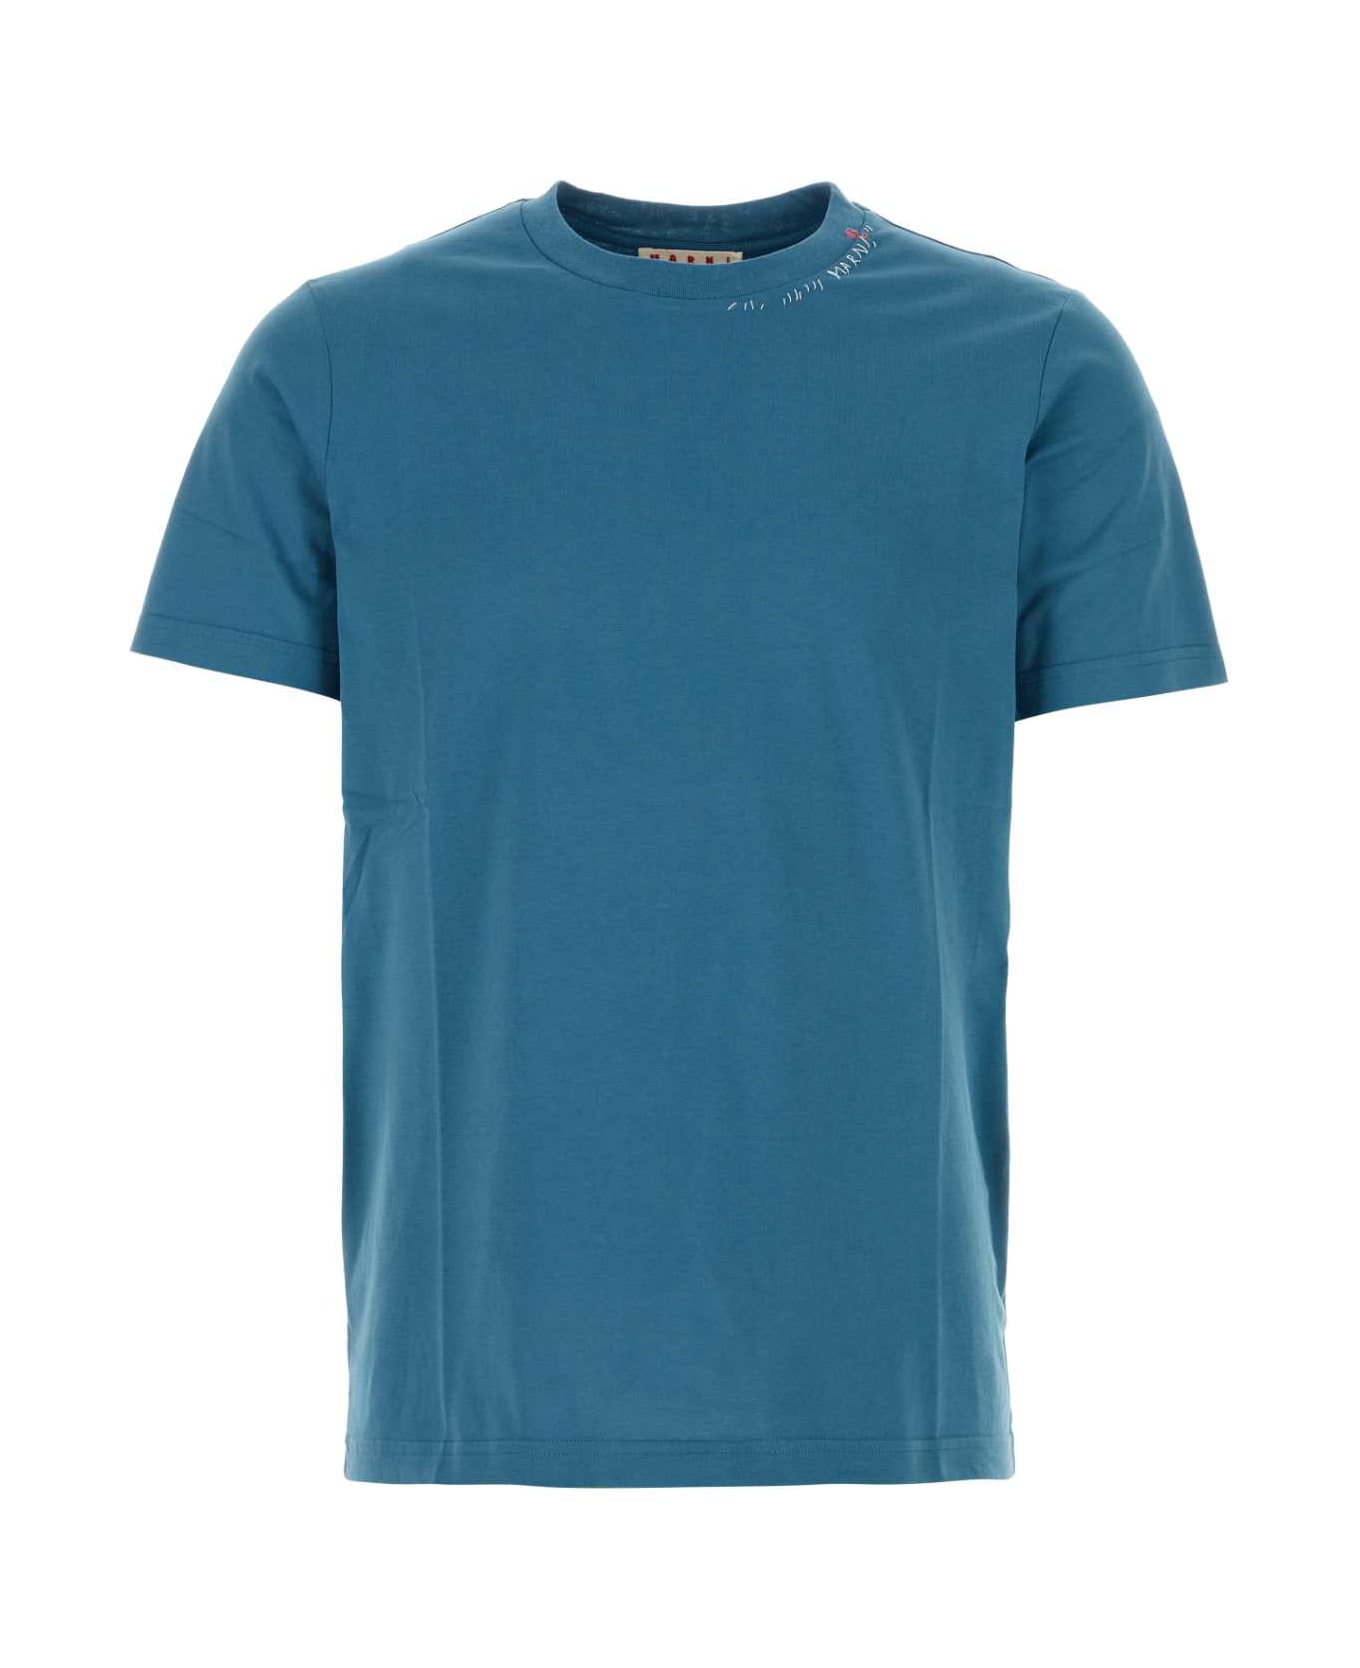 Marni Air Force Blue Cotton T-shirt - OPAL